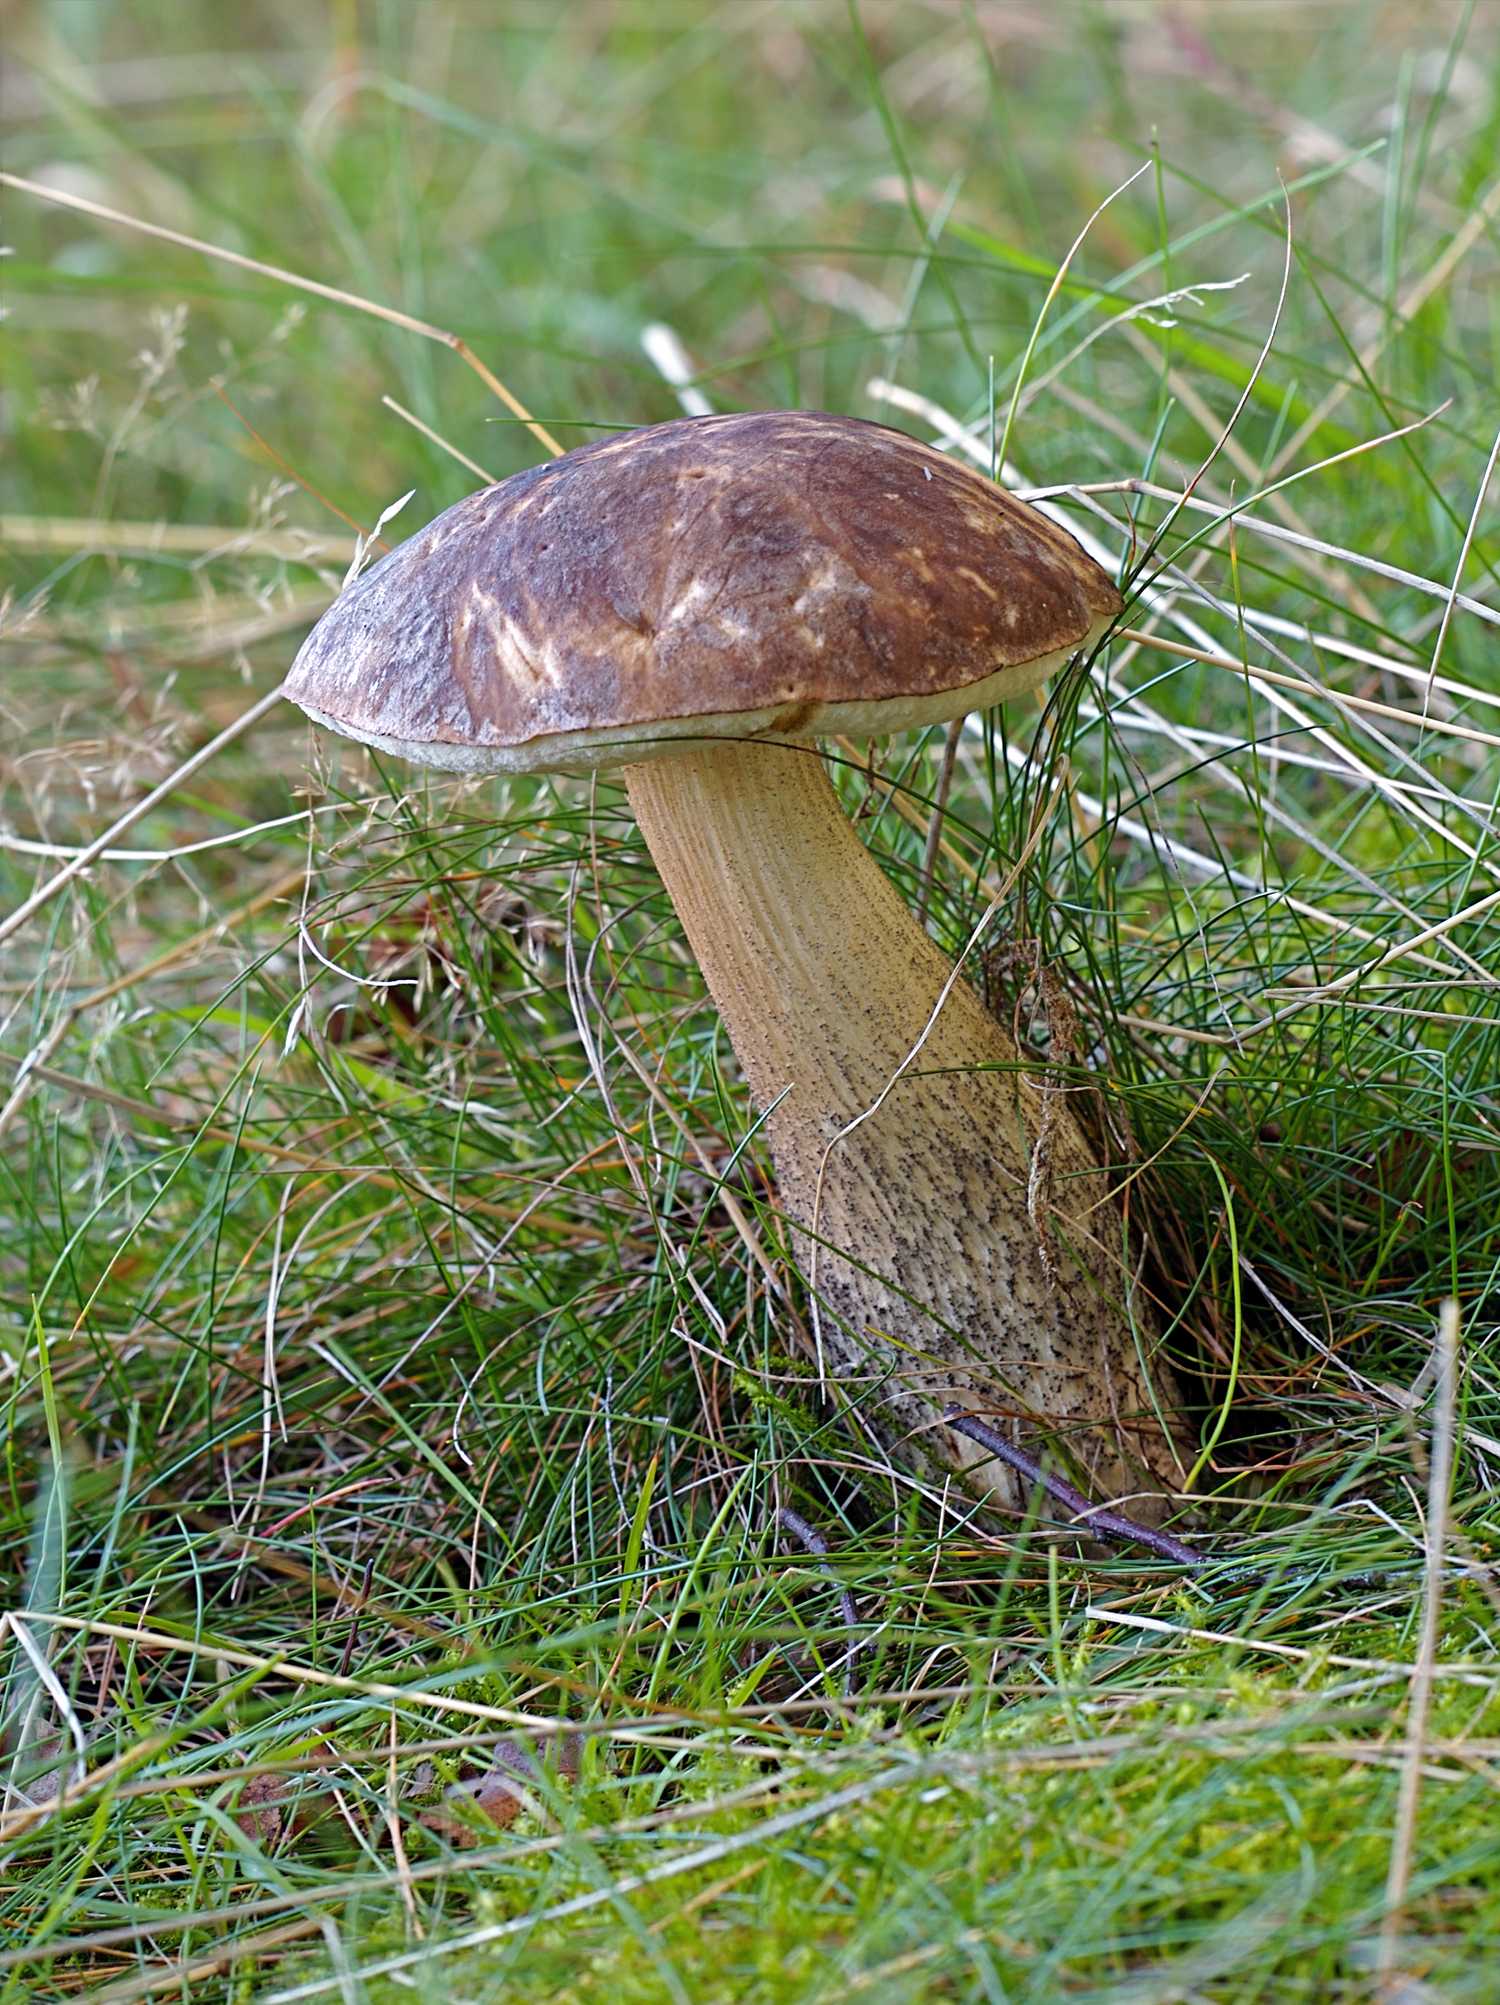 Фото гриба подберезовика: как он выглядит, какие существуют разновидности. Когда и в каких местах собирать. С какими грибами можно перепутать подберезовик.